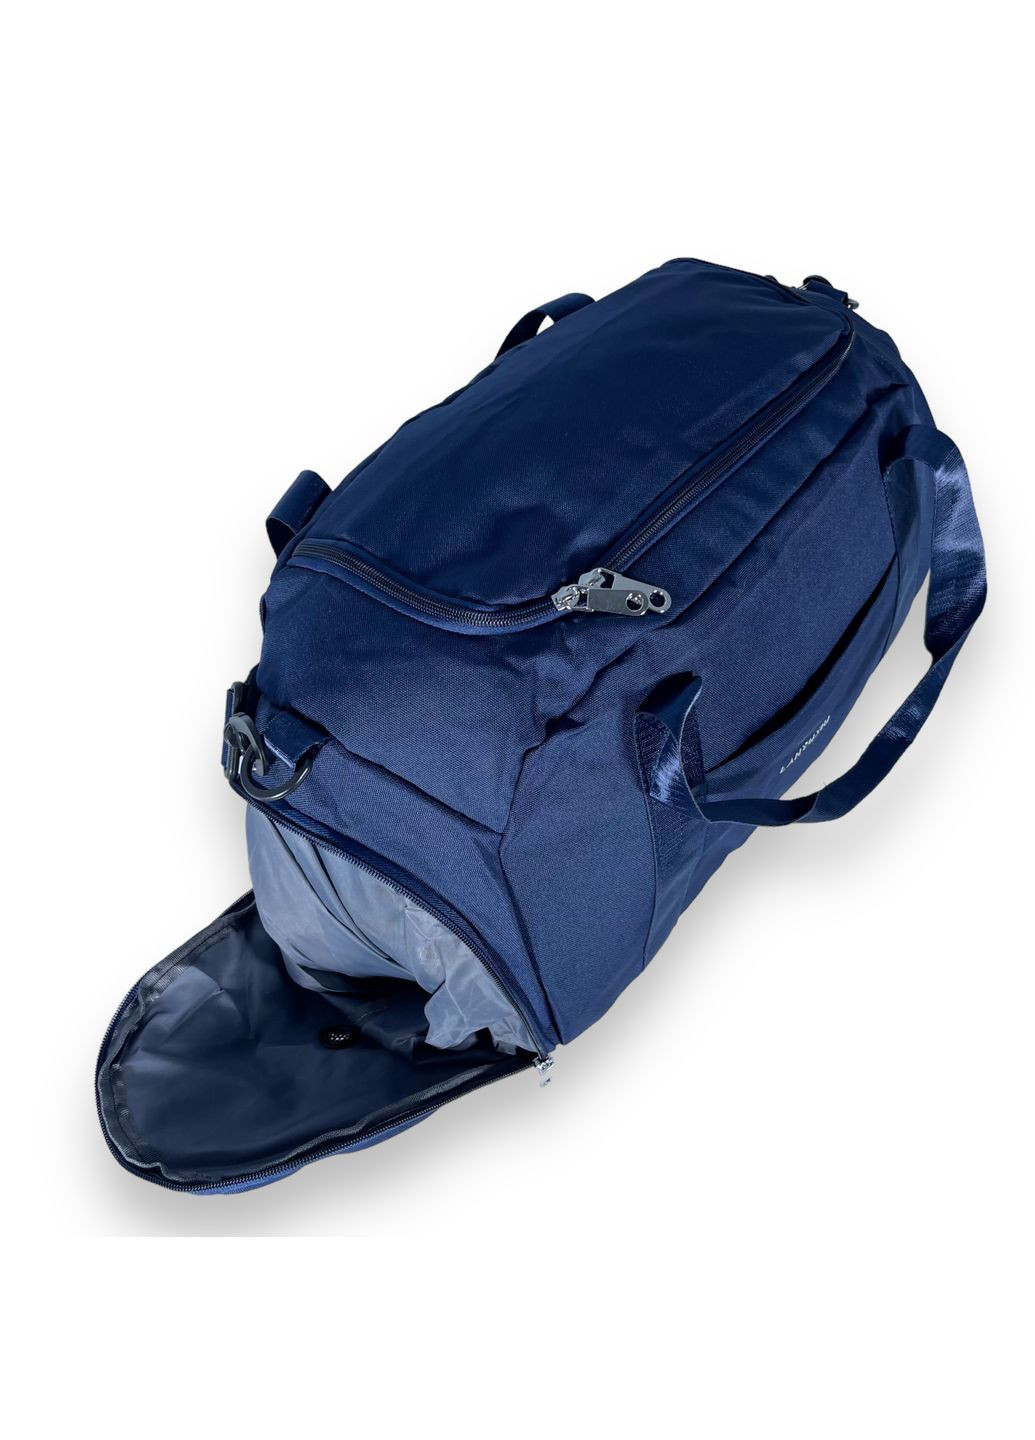 Сумка дорожная с карманом для обуви, одно отделение, съемный ремень, размер: 50*25*23 см, синяя Lanyuxiu (285814736)